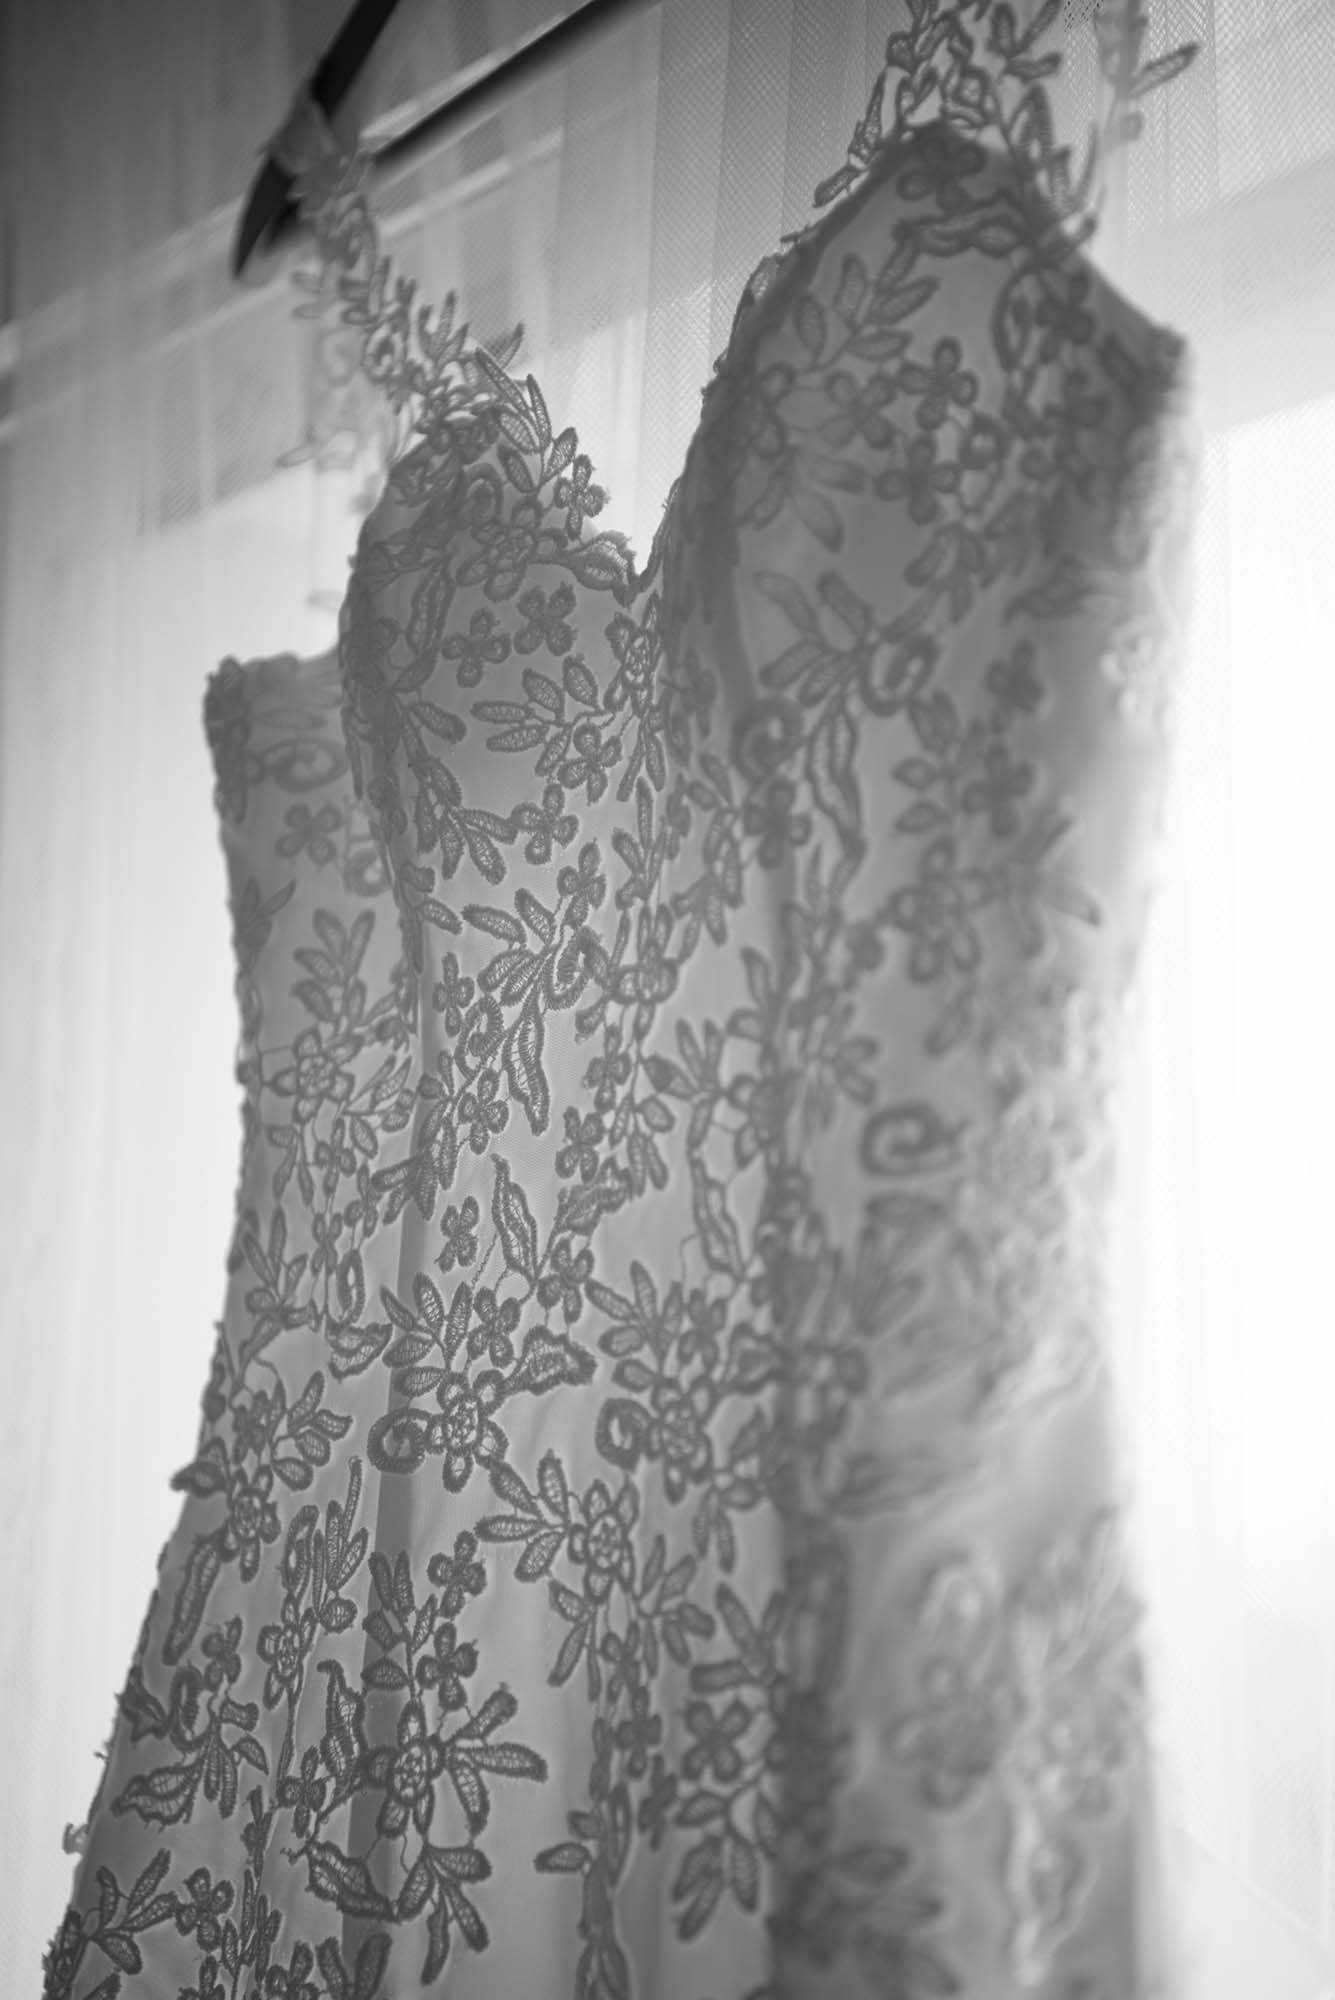 photo noir et blanc sur le bustier d'une robe de mariée en contre jour